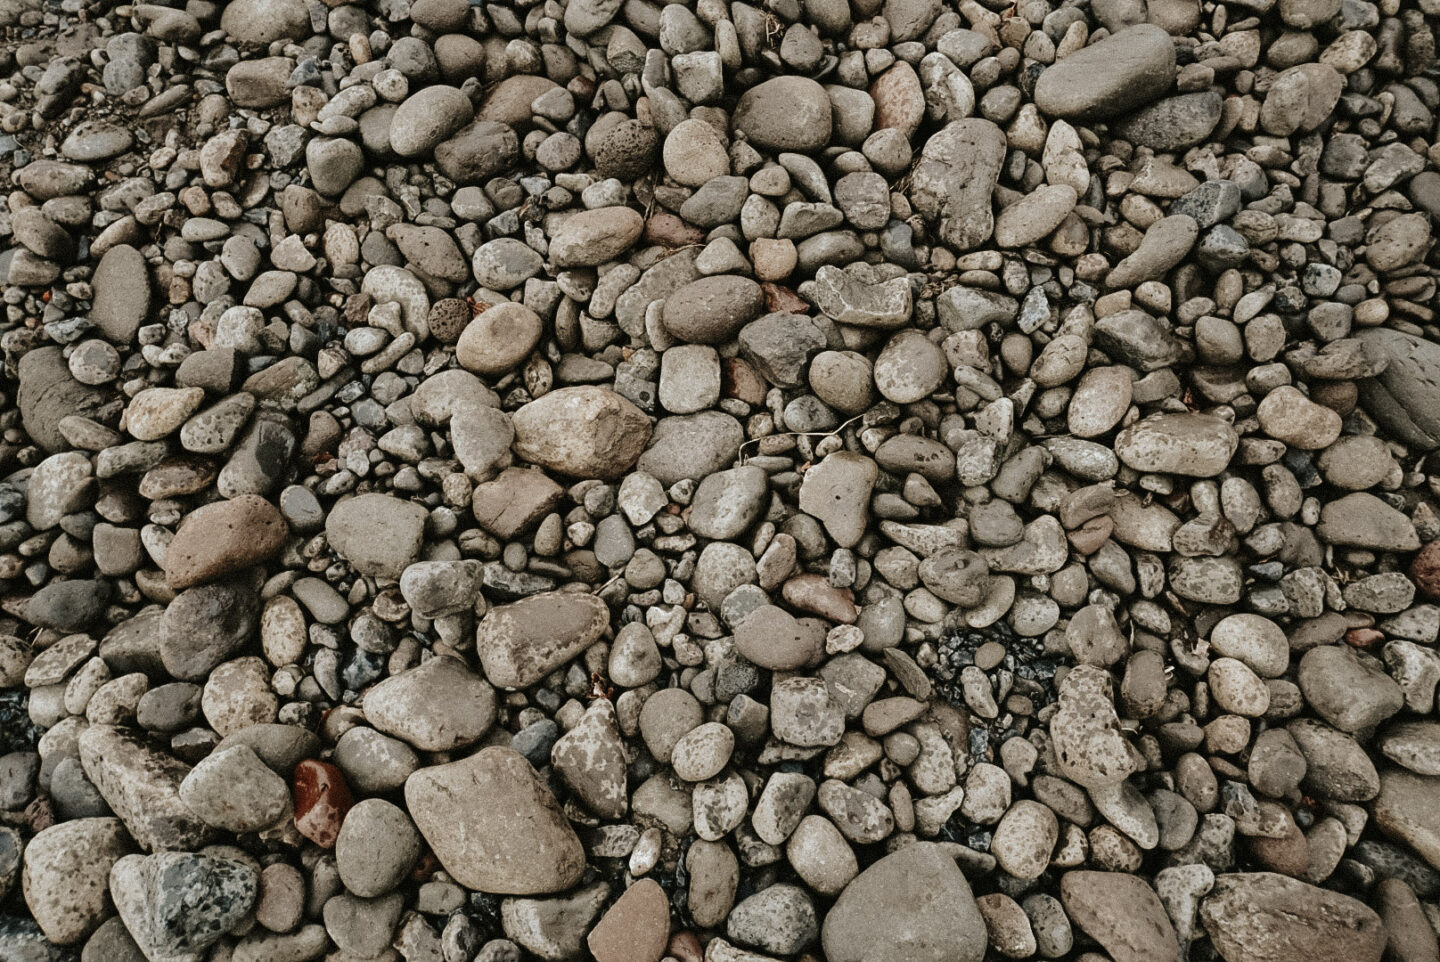 The Rocks - what the vineyard terroir looks like in Walla Walla